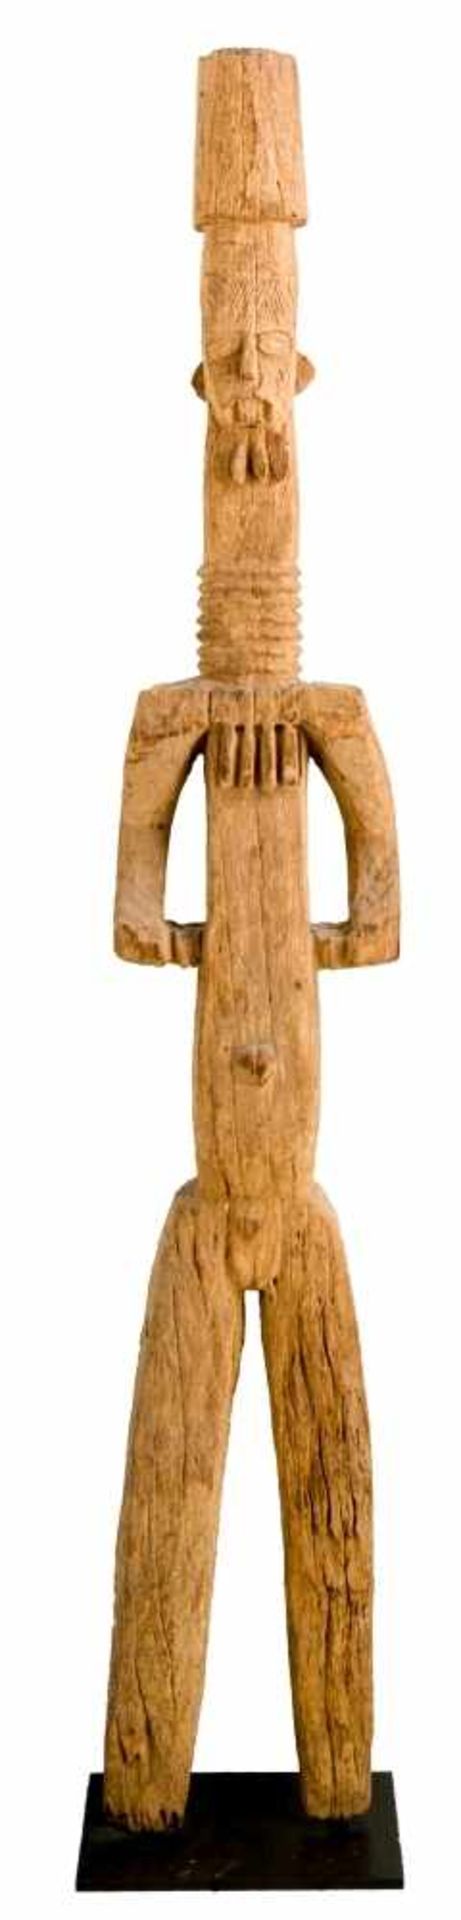 Monumentale Schutzfigur der IboNigeria, wohl 1. Hälfte 20. Jh.Holz, geschnitztca. 180 cm